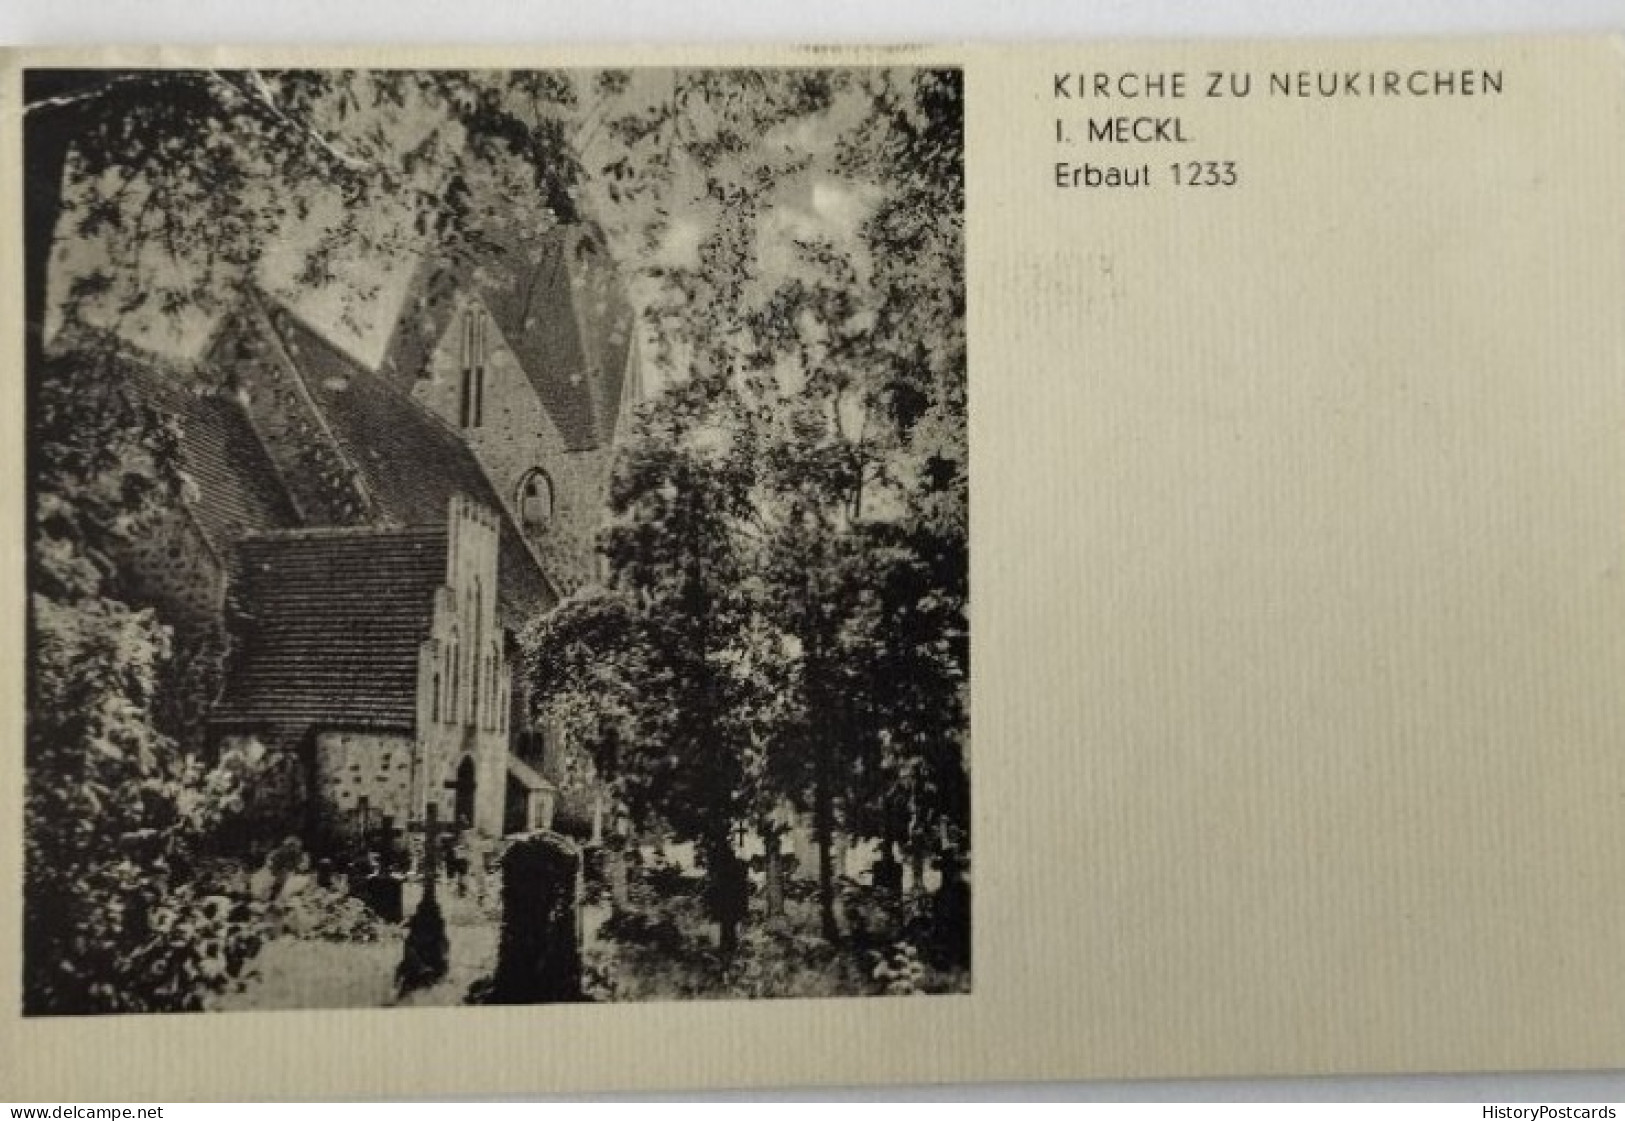 Kirche Zu Neukirchen In Mecklenburg, Klein Belitz, 1944 - Rostock